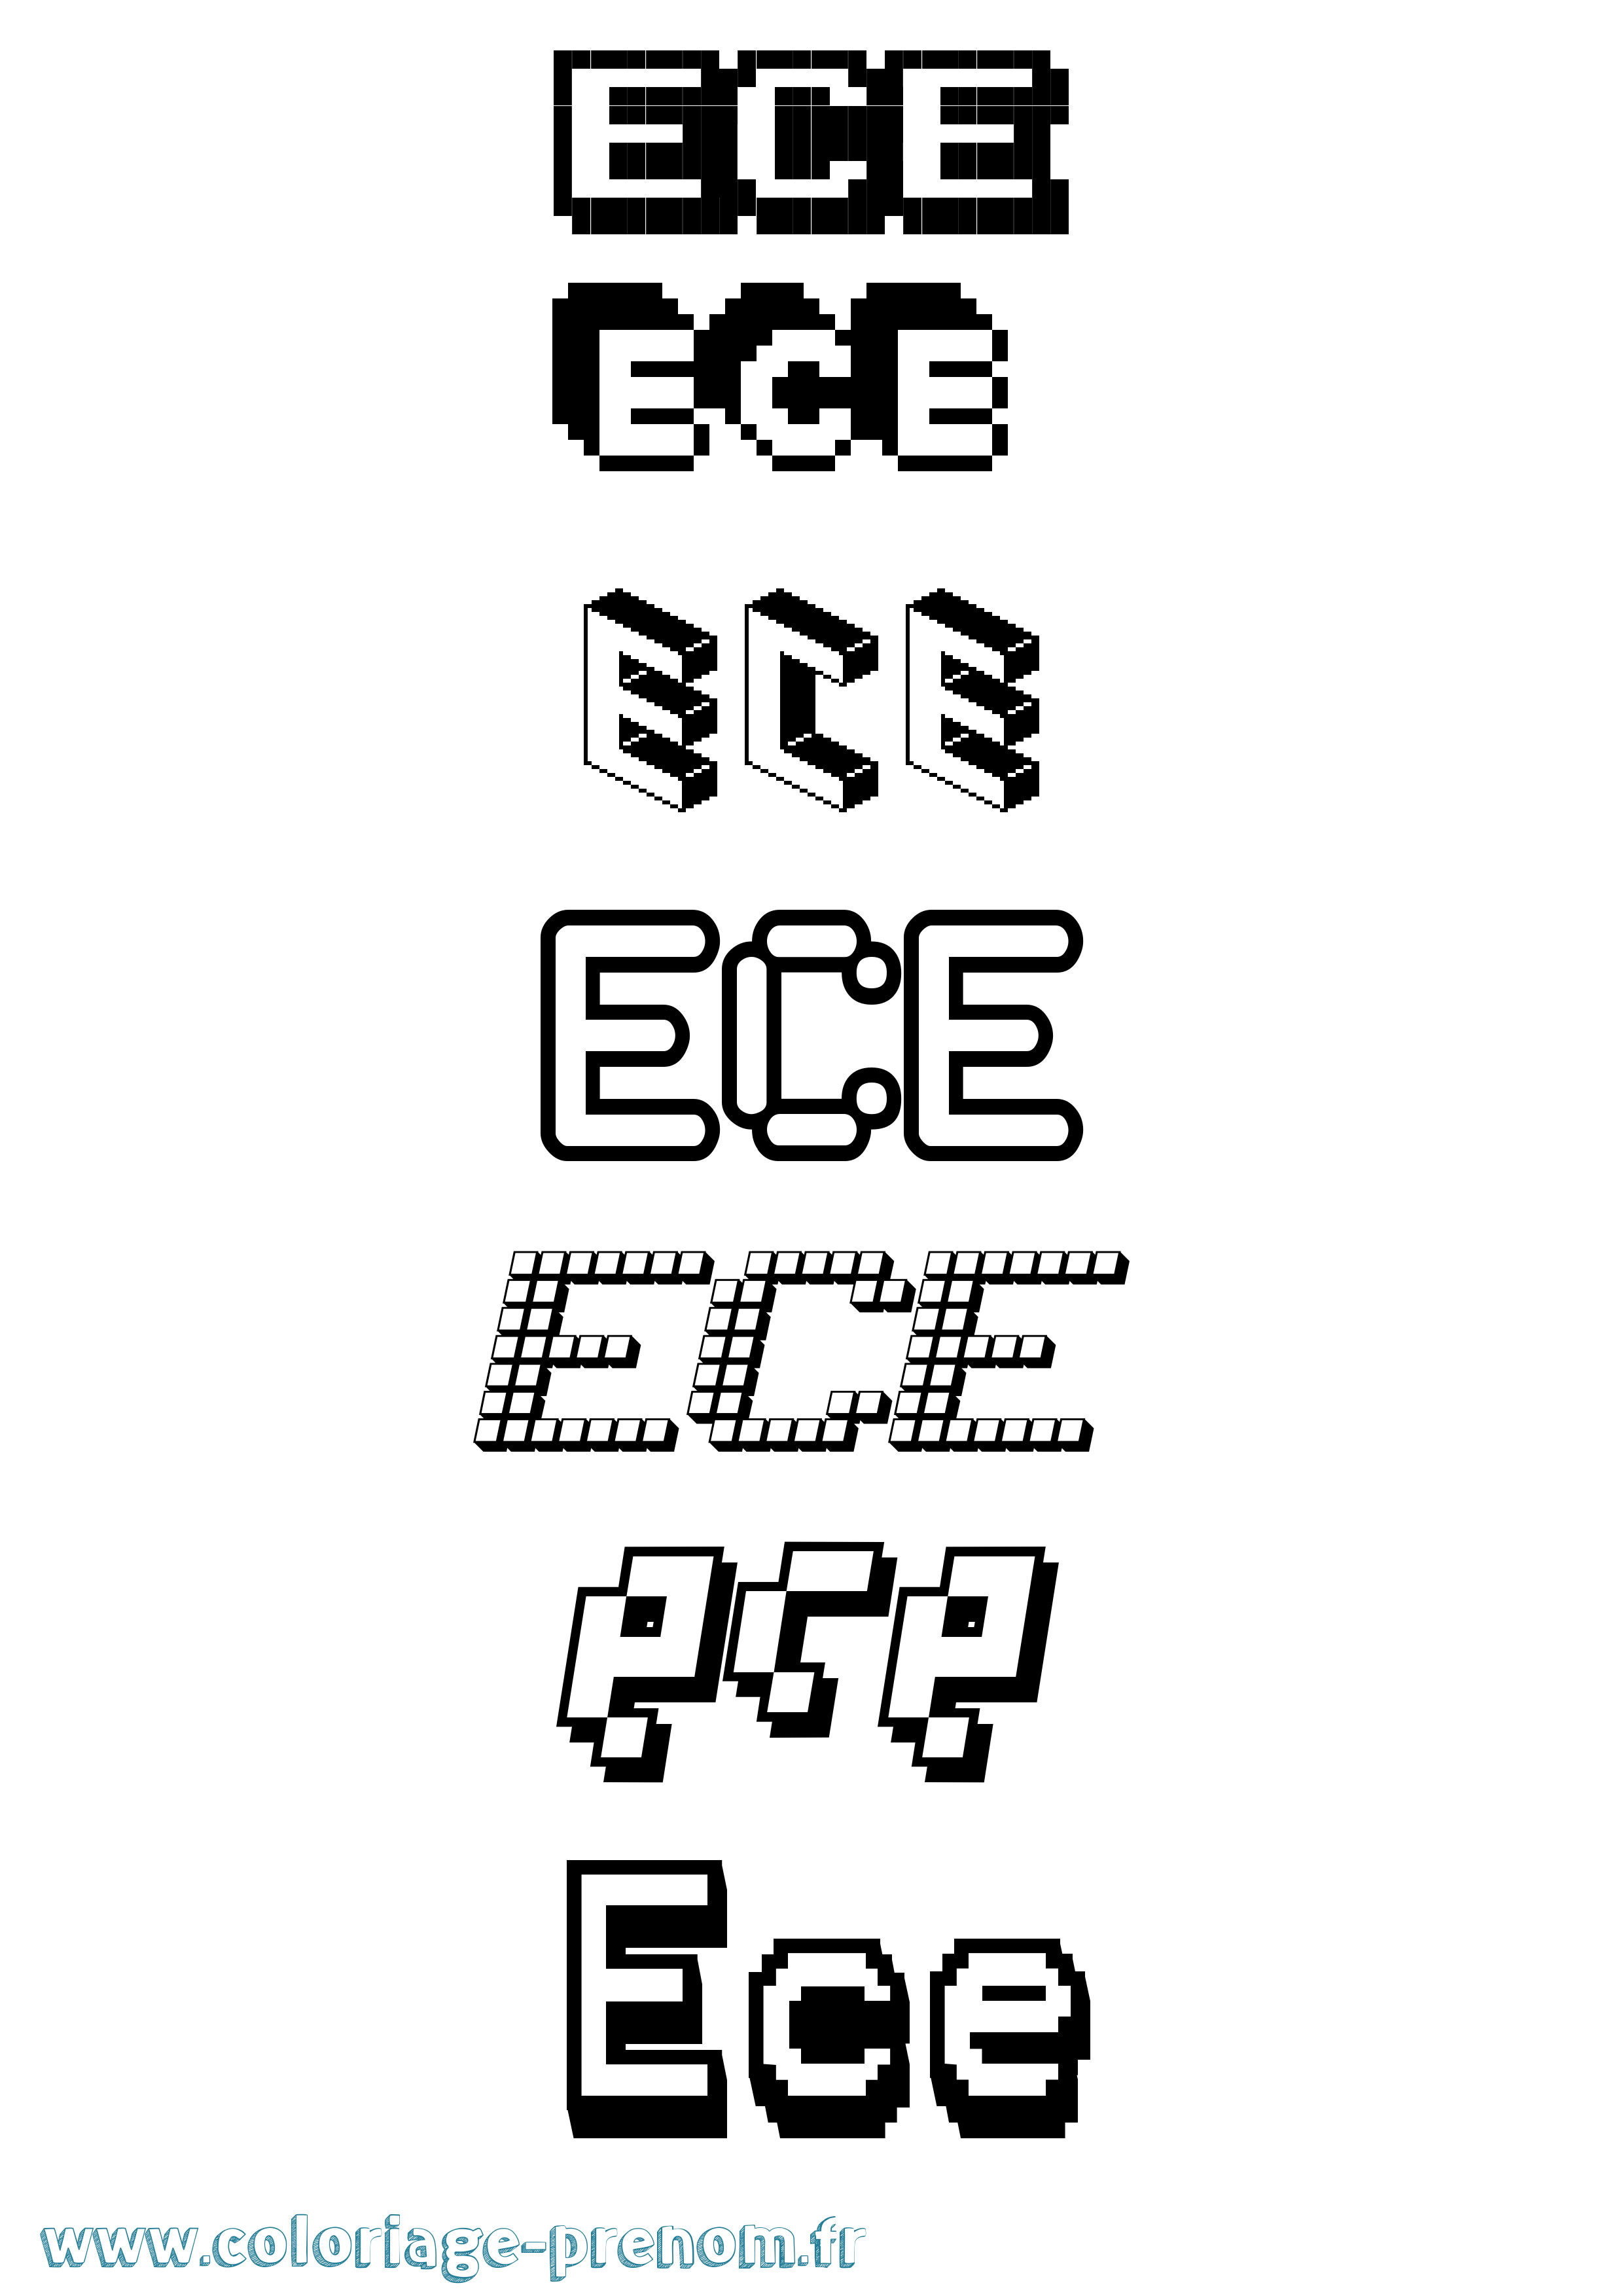 Coloriage prénom Ece Pixel